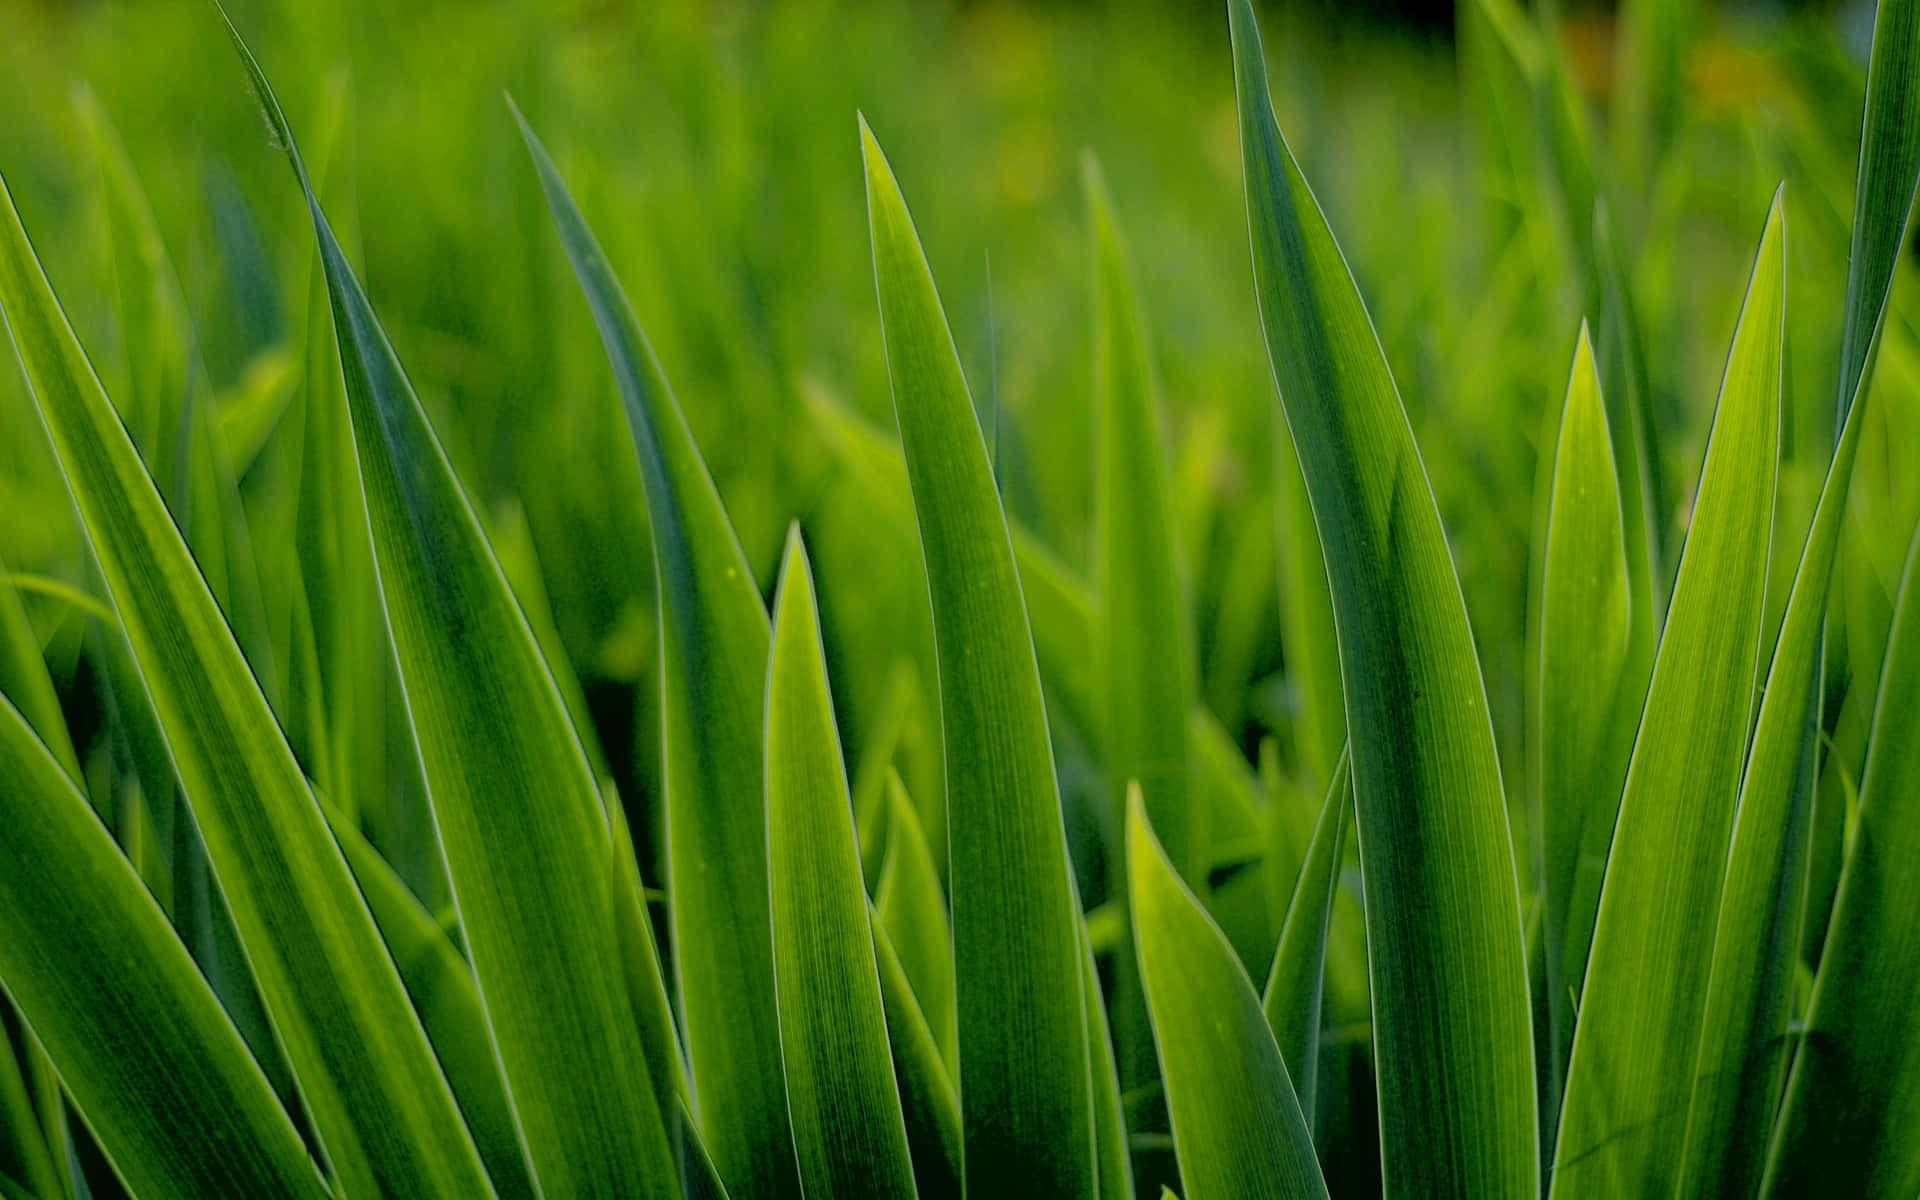 A Close Up Of Green Grass